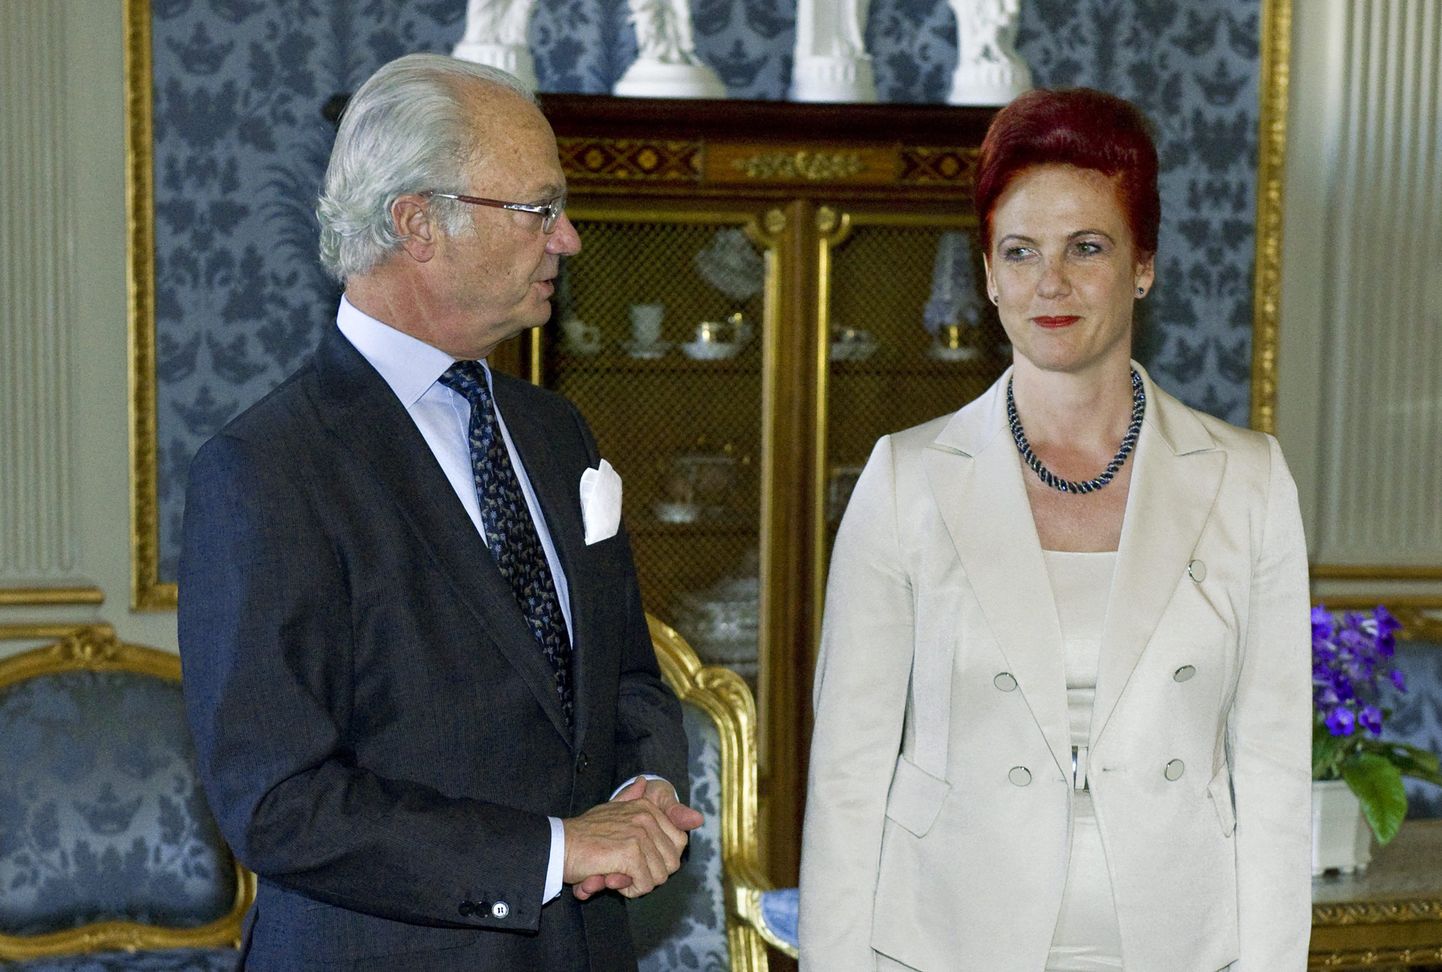 Läti parlamendi spiiker Solvita Āboltiņa koos Rootsi kuninga Carl XVI Gustafiga tänavu 9. mail Stockholmis.